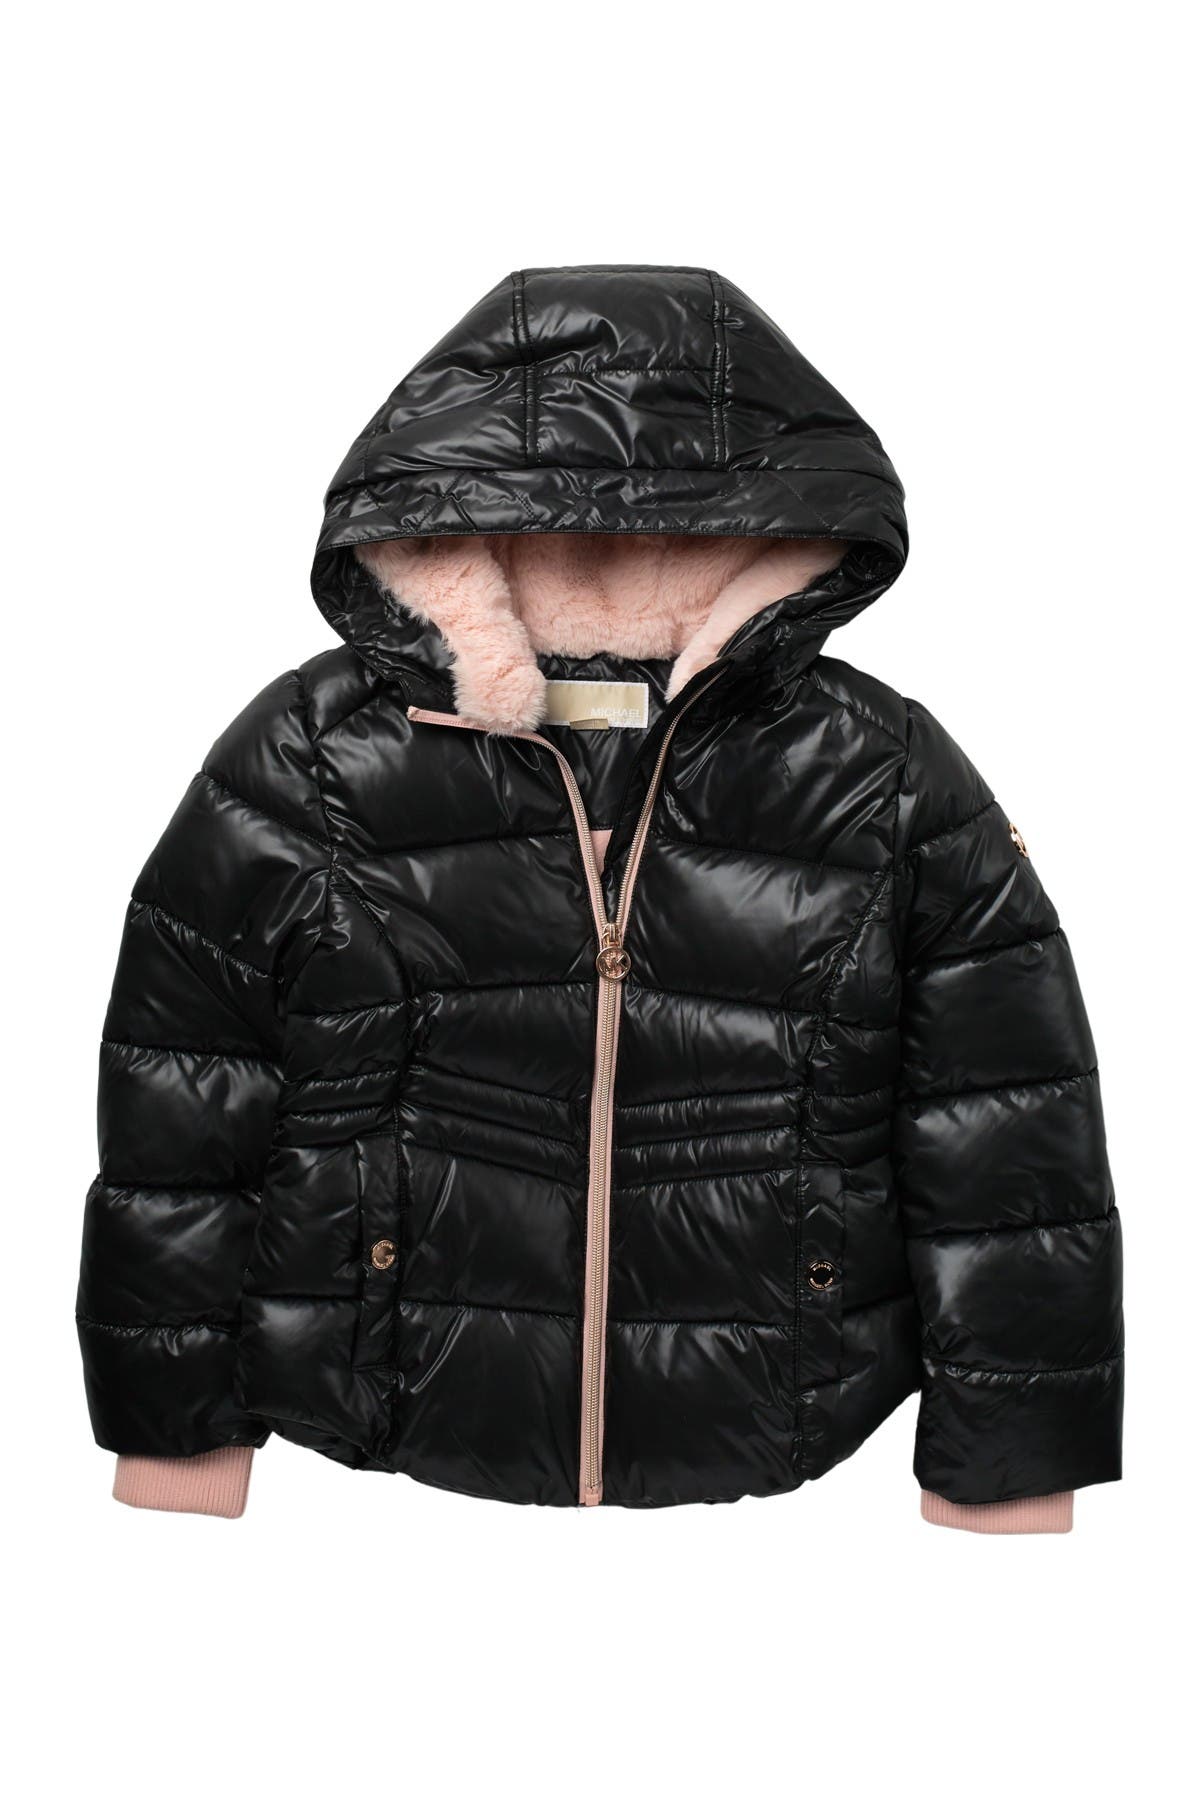 michael kors kidswear jacket